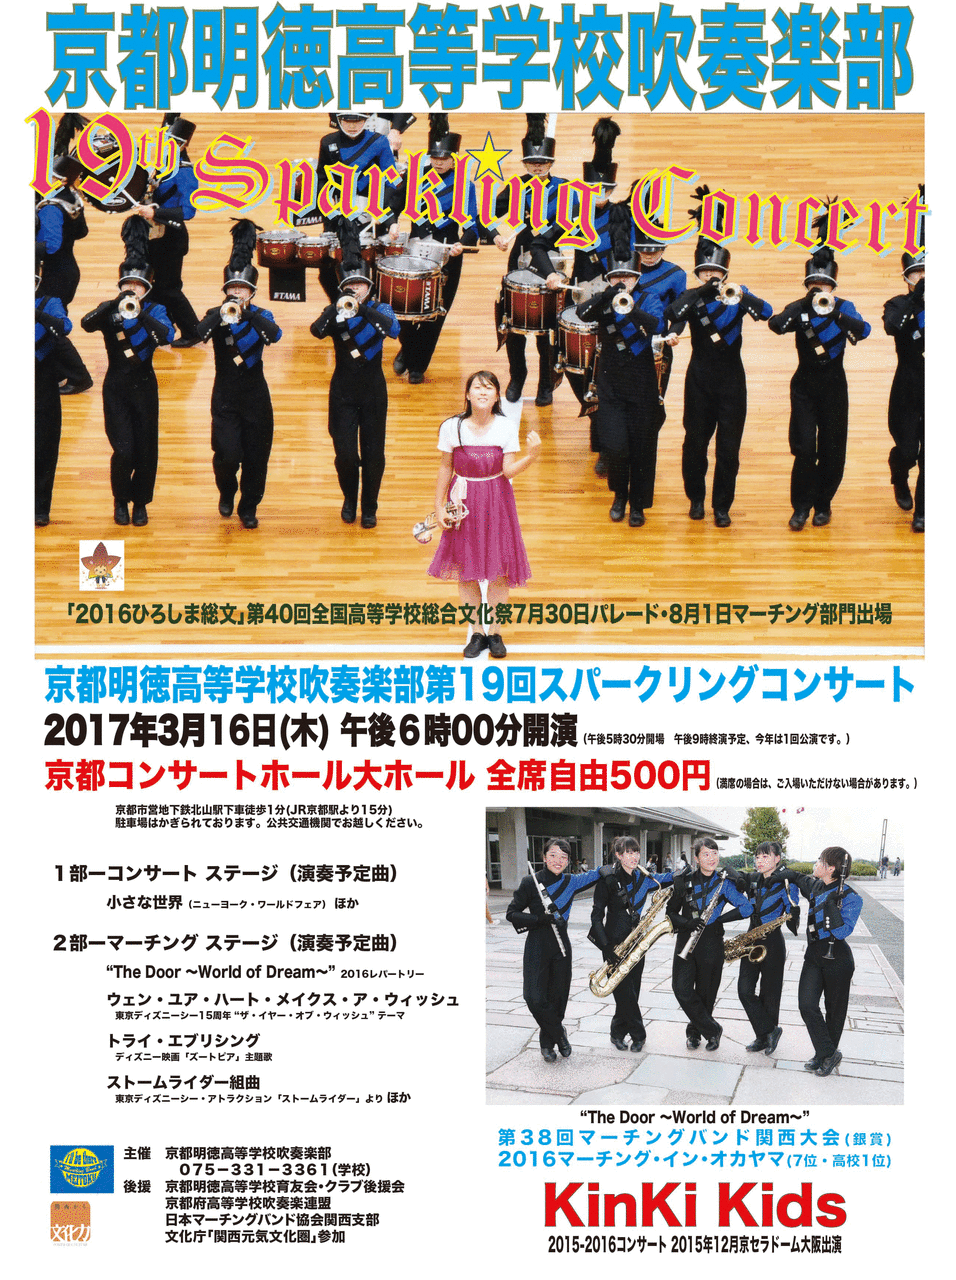 19th Sparkling Concert 京都明徳高校マーチングバンド部日記